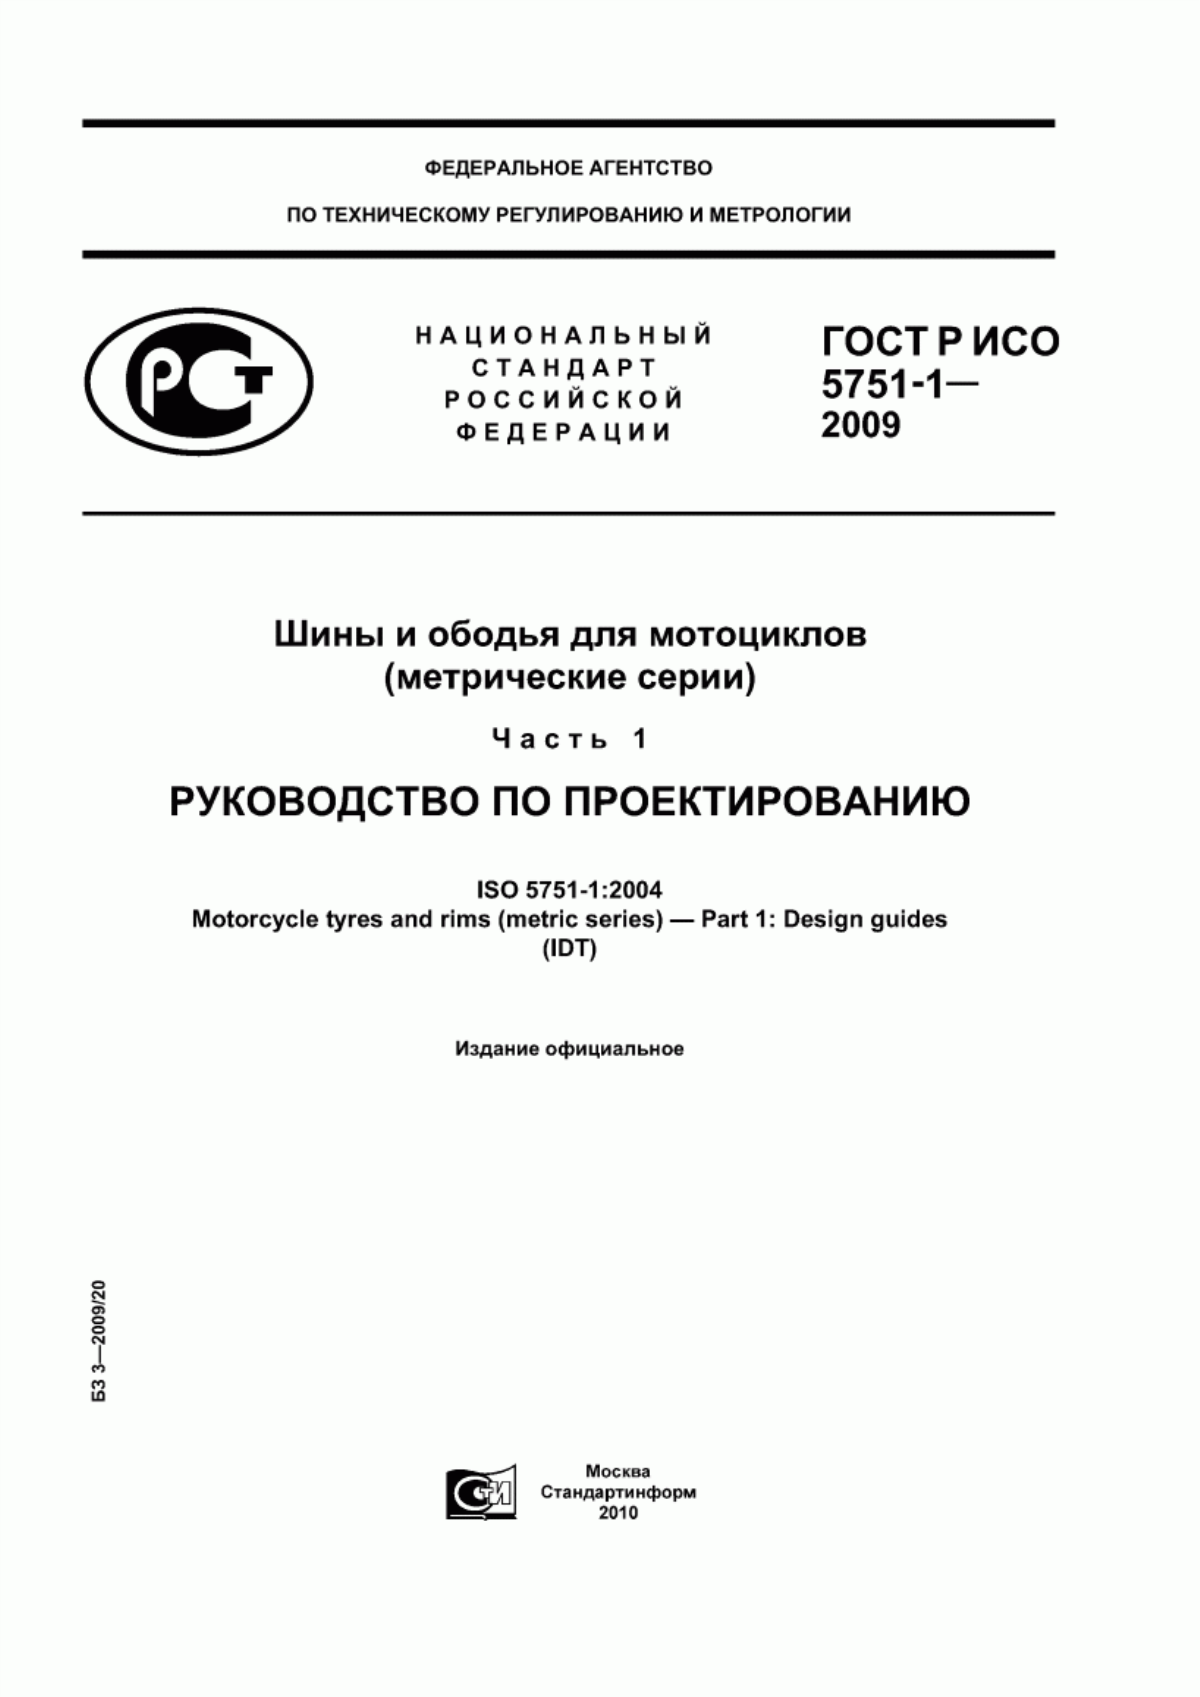 ГОСТ Р ИСО 5751-1-2009 Шины и ободья для мотоциклов (метрические серии). Часть 1. Руководство по проектированию